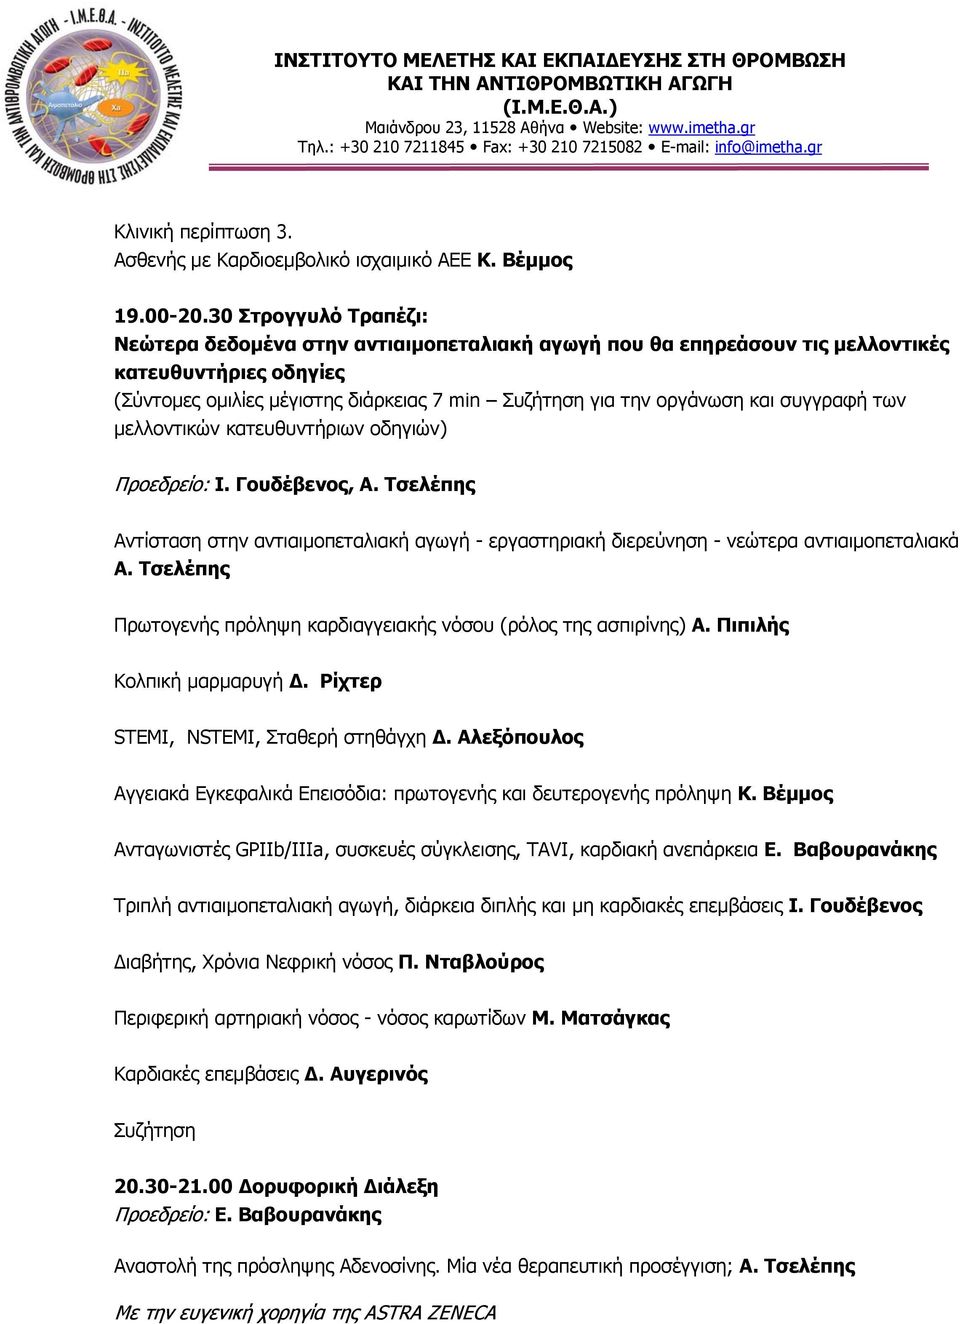 συγγραφή των μελλοντικών κατευθυντήριων οδηγιών) Προεδρείο: Ι. Γουδέβενος, Α. Τσελέπης Αντίσταση στην αντιαιμοπεταλιακή αγωγή - εργαστηριακή διερεύνηση - νεώτερα αντιαιμοπεταλιακά Α.